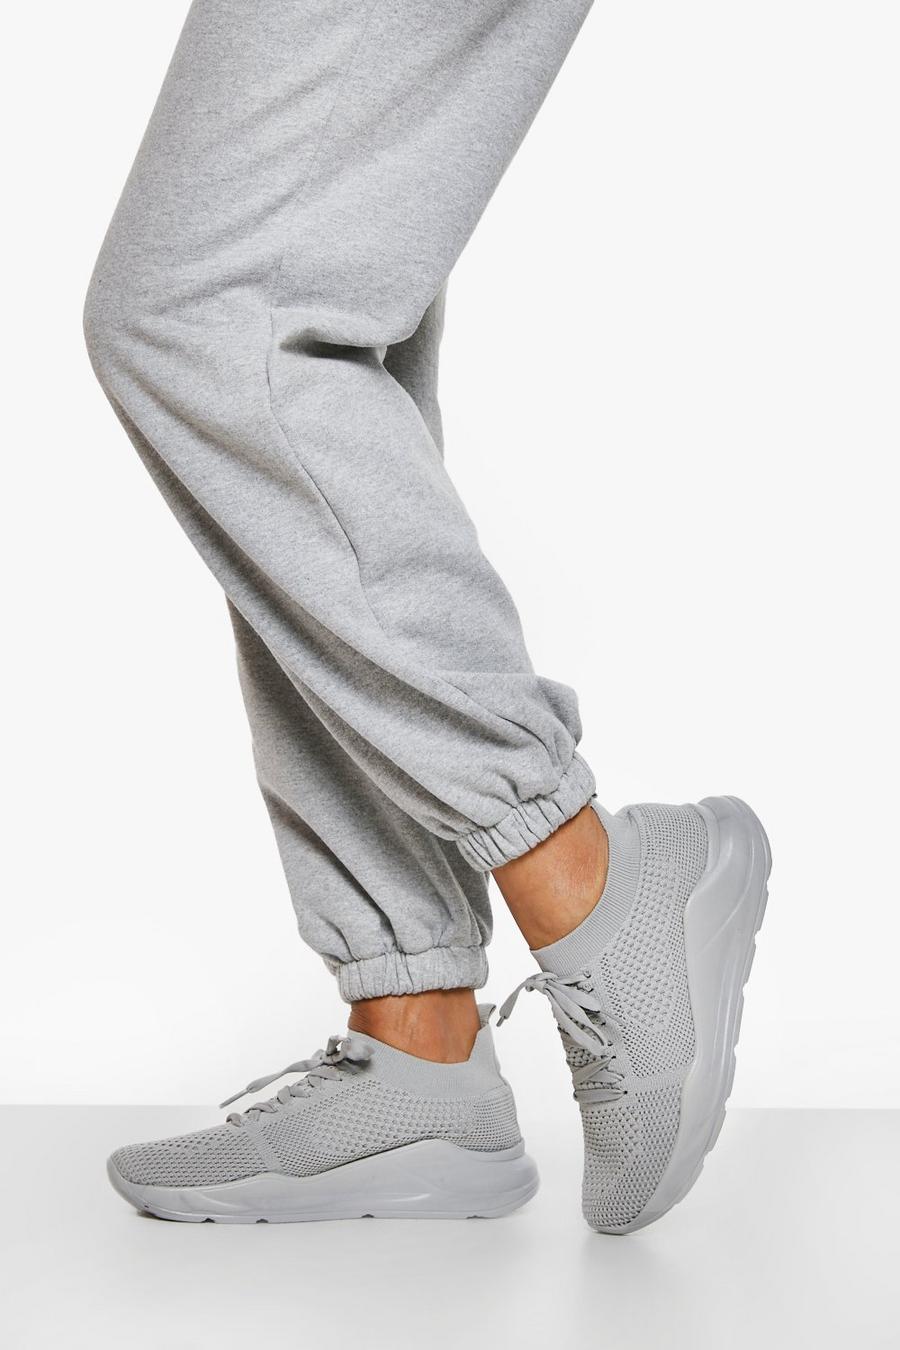 Sneaker a calza in maglia con lacci e suola spessa, Grey grigio